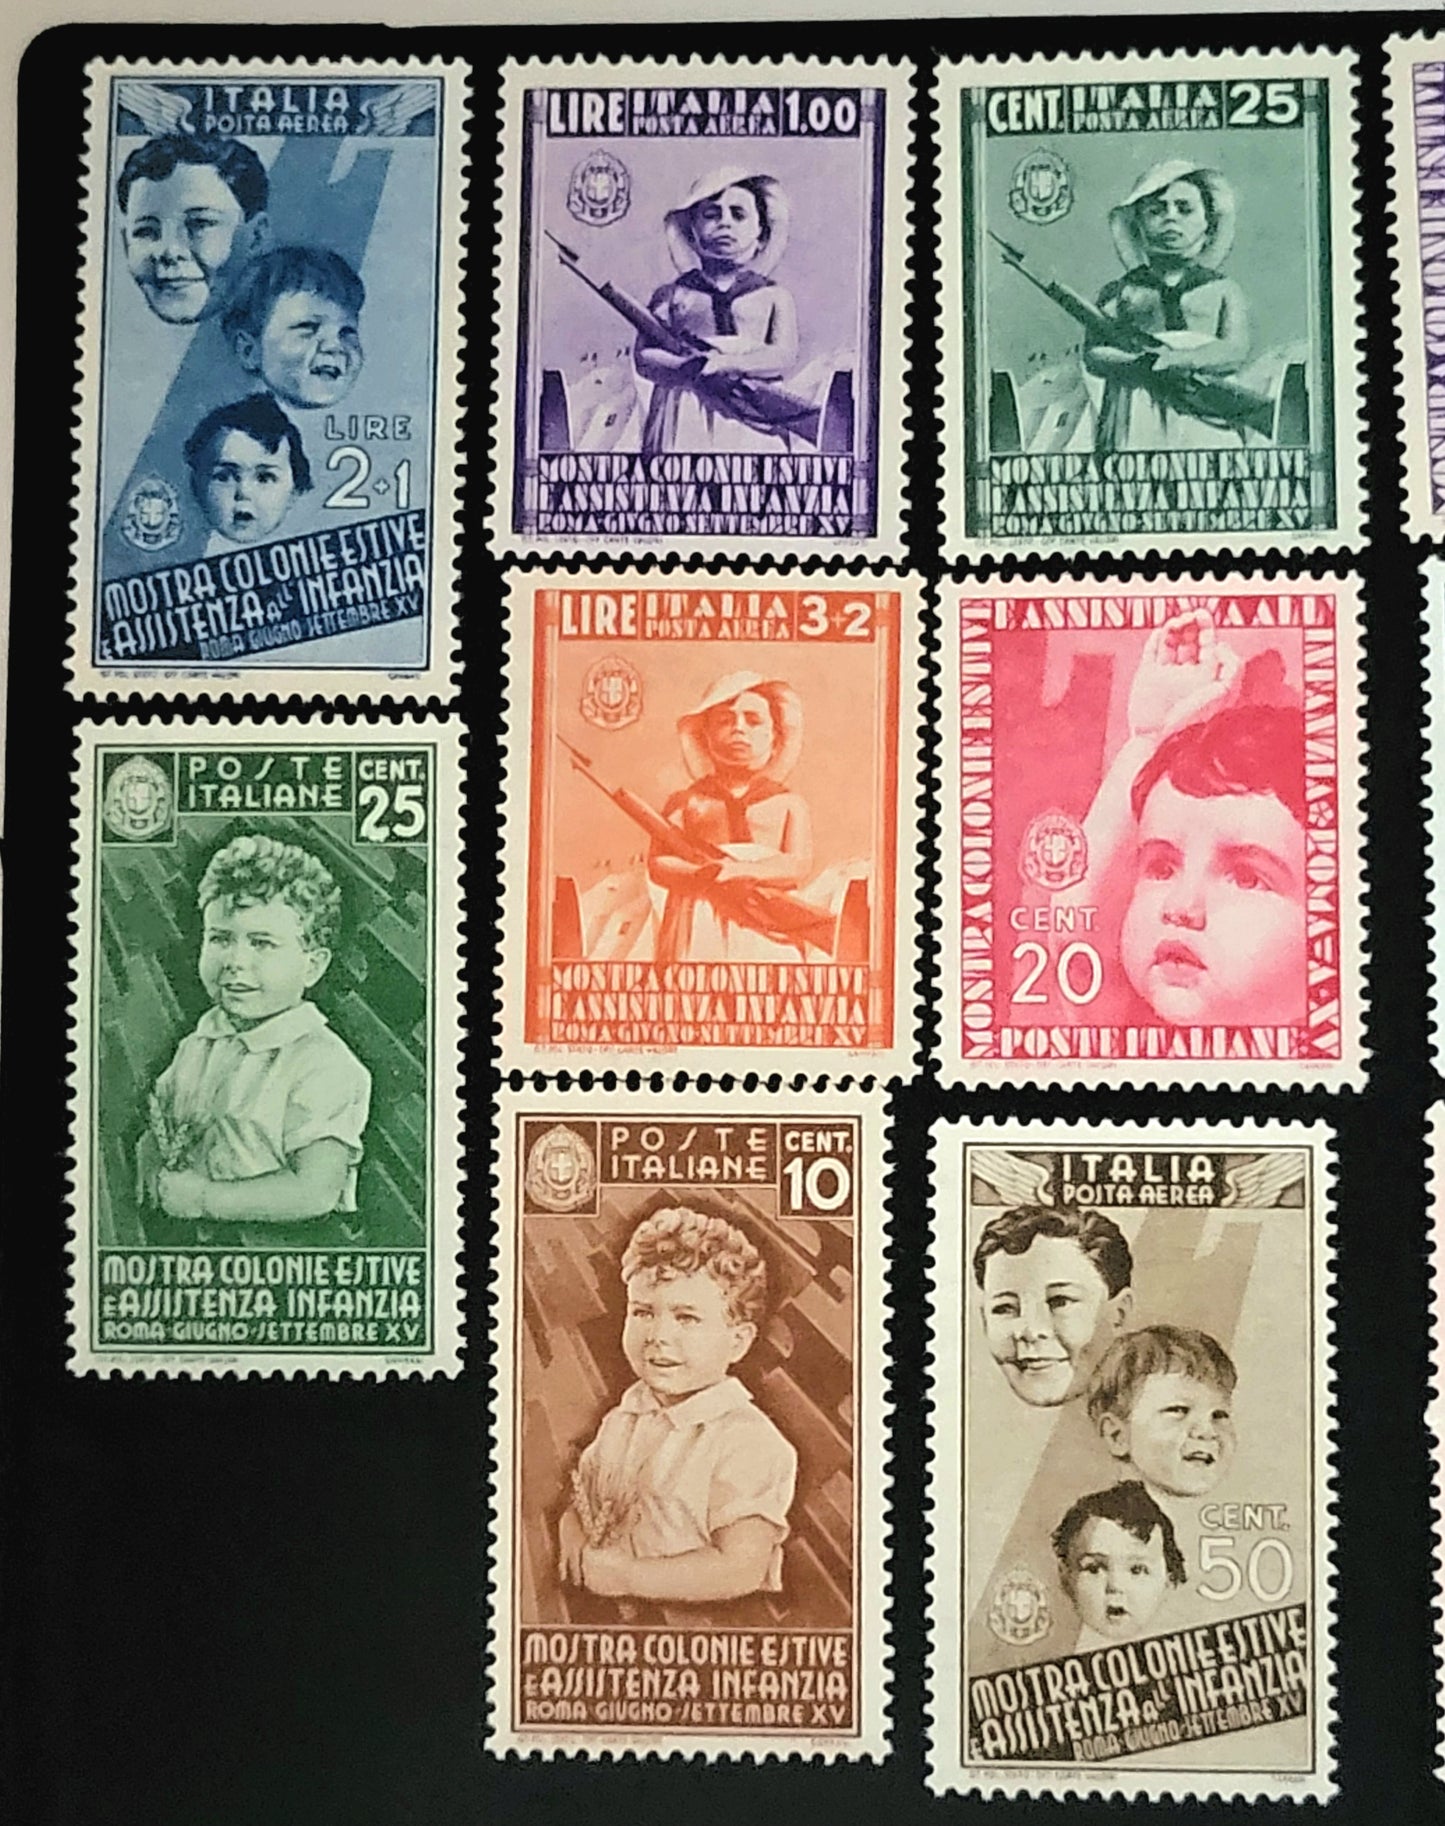 REGNO D'ITALIA - 1937 - Mostra delle Colonie Estive e assistenza all'infanzia.